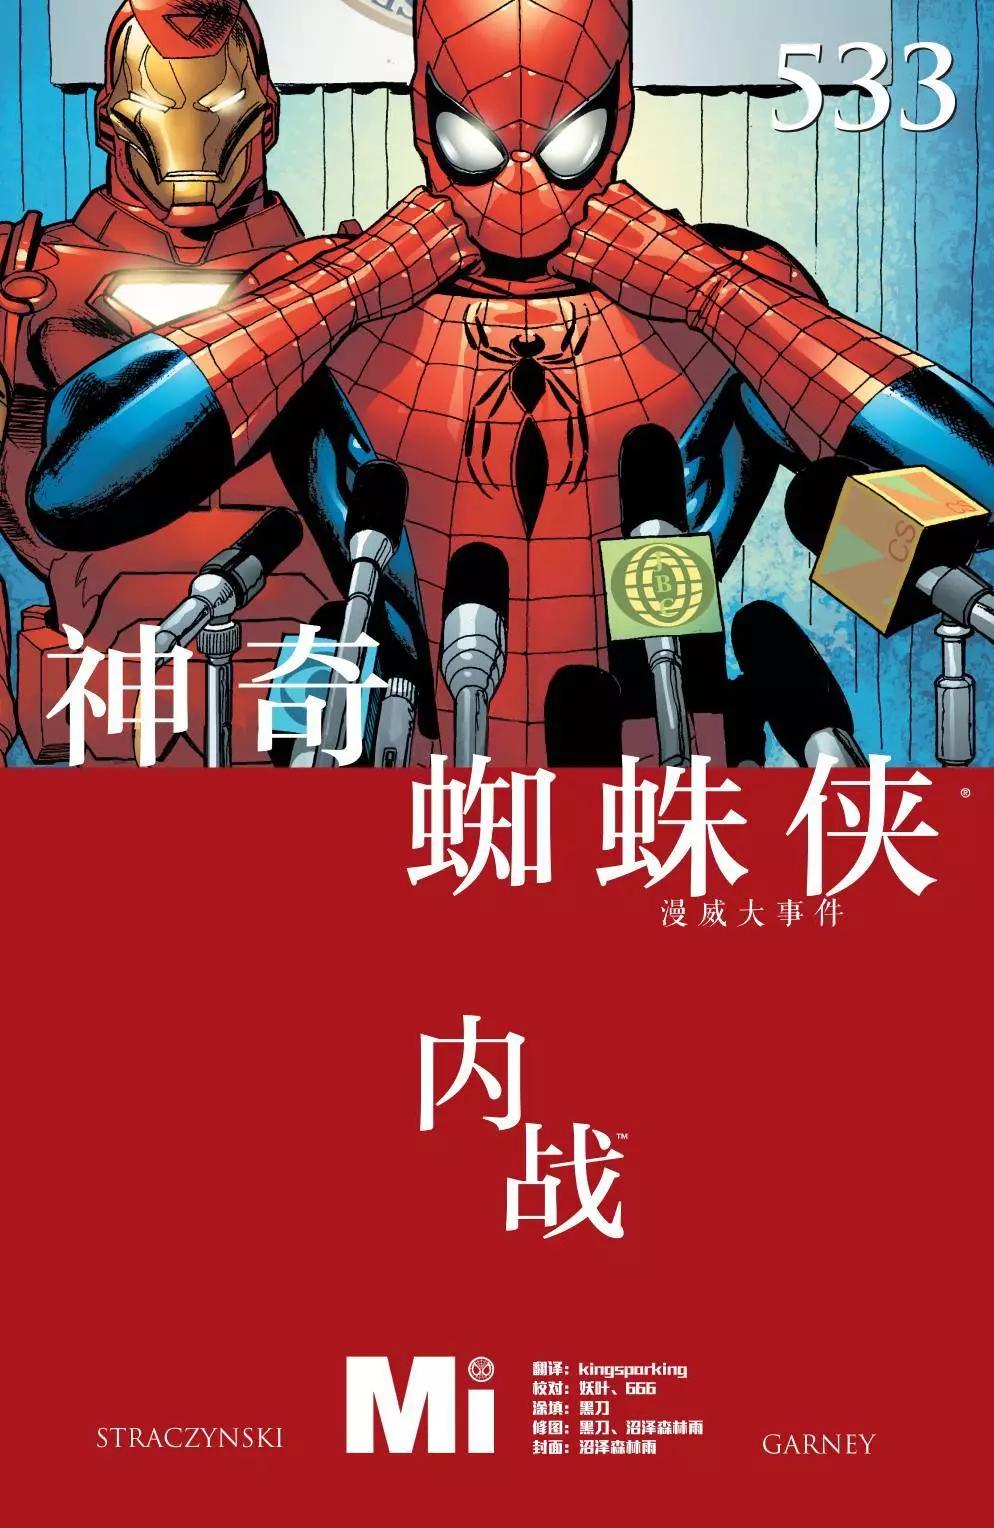 内战2006 - 神奇蜘蛛侠#533 - 1